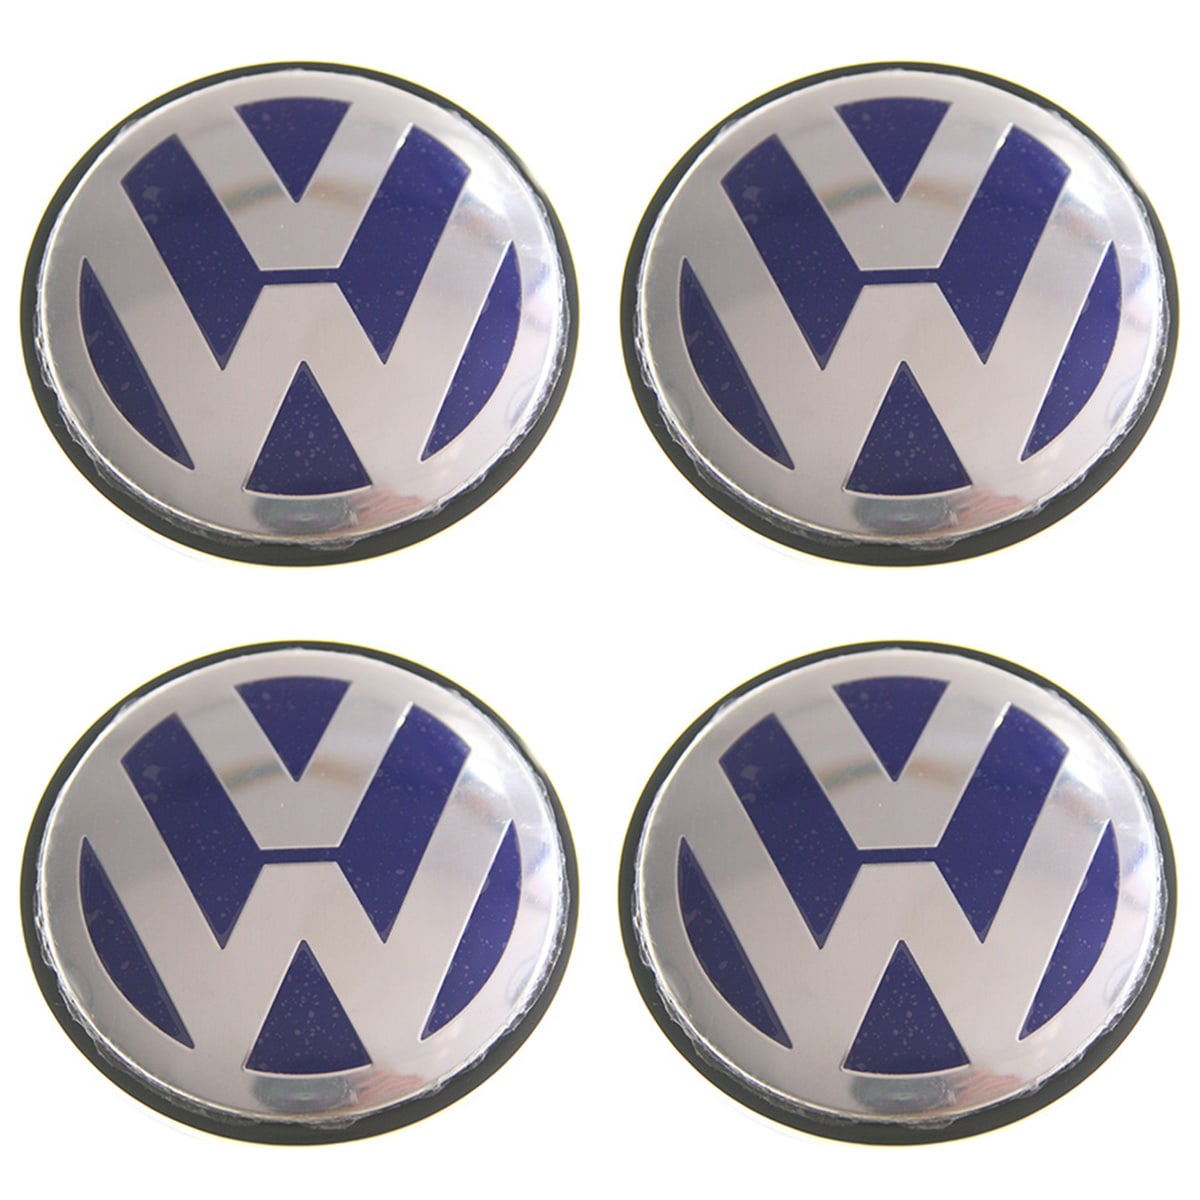 Caches Moyeux centre de roues VW 65mm logo VW chrome fond bleu.